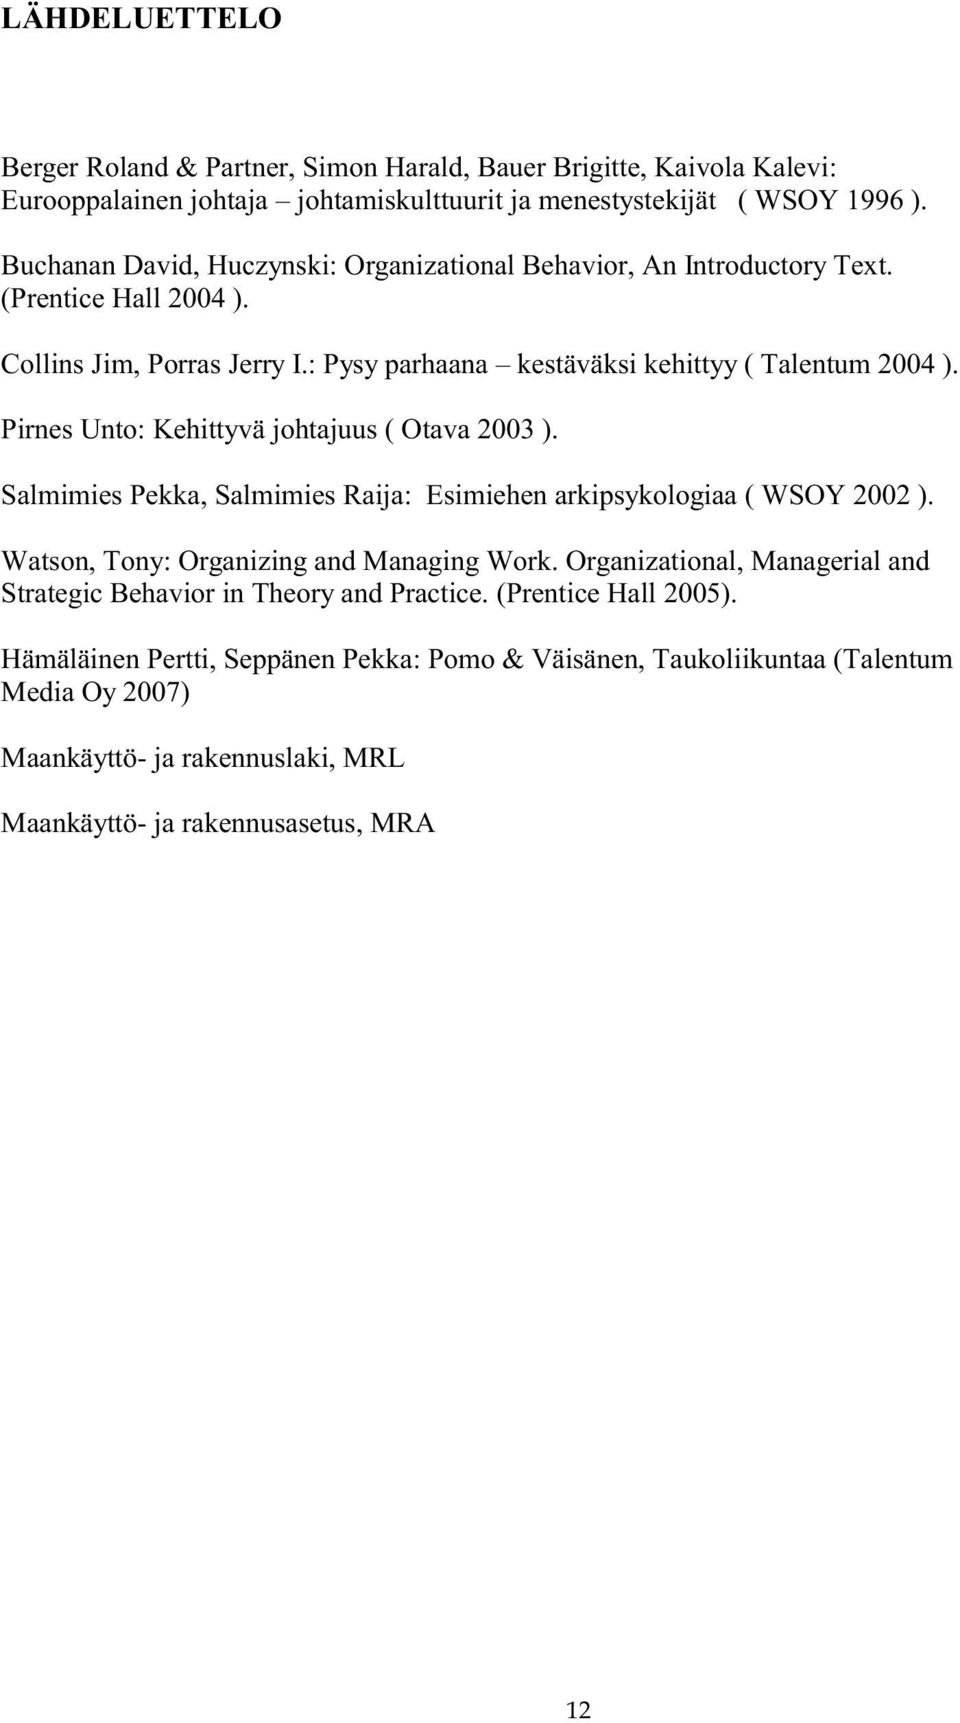 Pirnes Unto: Kehittyvä johtajuus ( Otava 2003 ). Salmimies Pekka, Salmimies Raija: Esimiehen arkipsykologiaa ( WSOY 2002 ). Watson, Tony: Organizing and Managing Work.